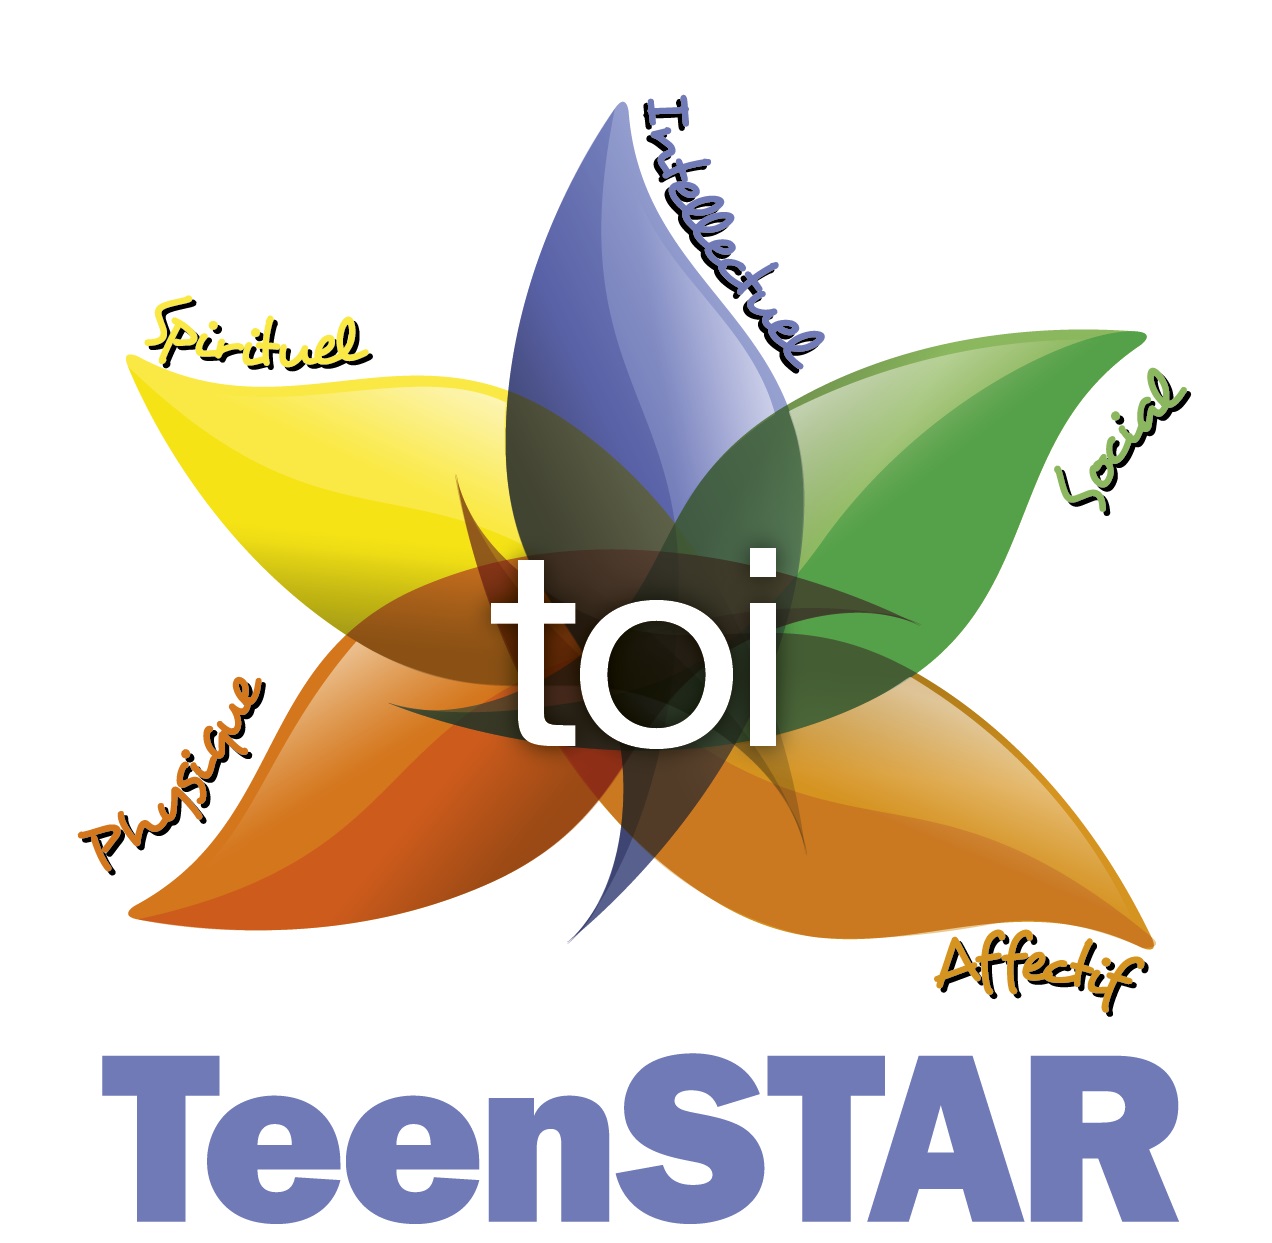 Session pour formateurs Teenstar à Caen du 11 au 15 octobre